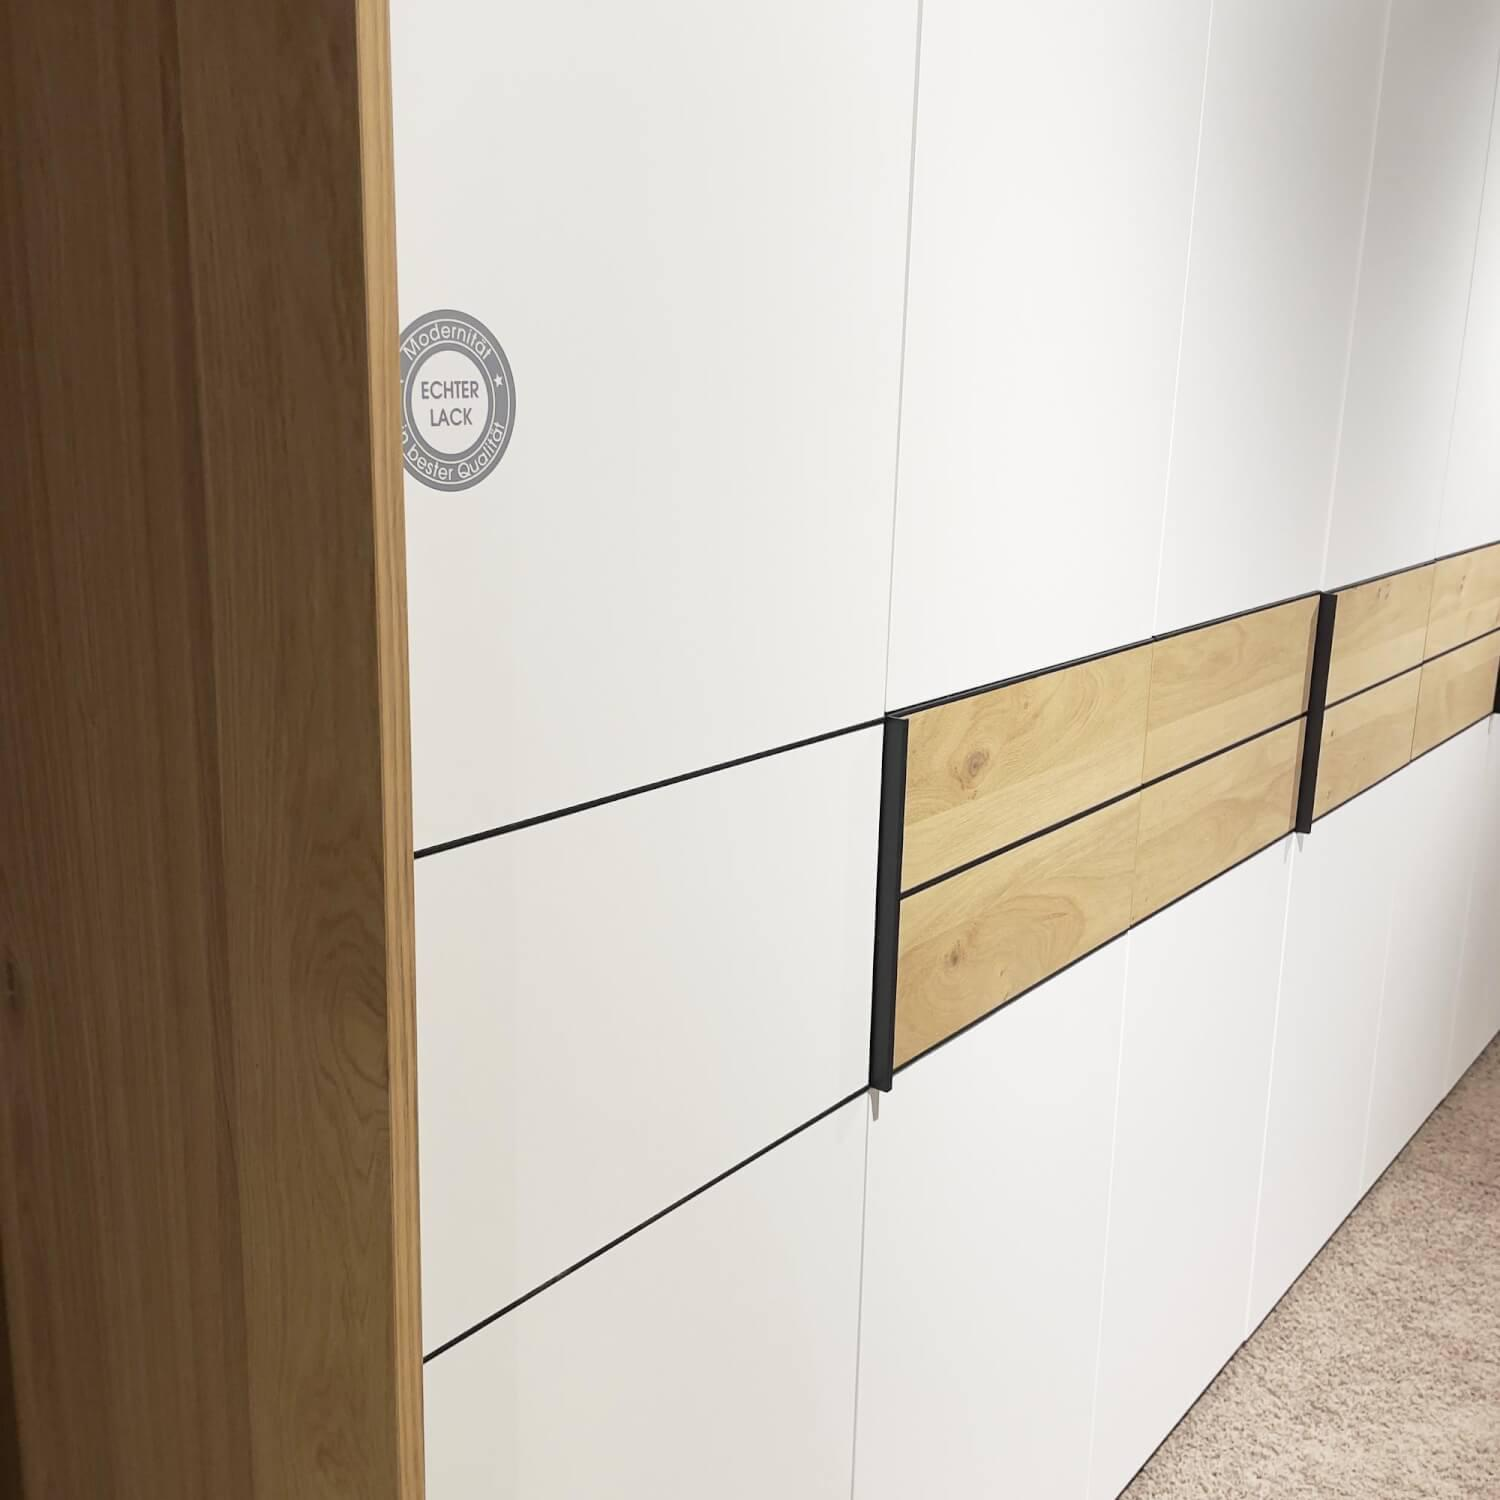 Schlafzimmer Madiva Lack Weiß Balkeneiche Echtholz Furniert Bauchbinde Mit LED Beleuchtung Ohne Matratze Und Lattenrost